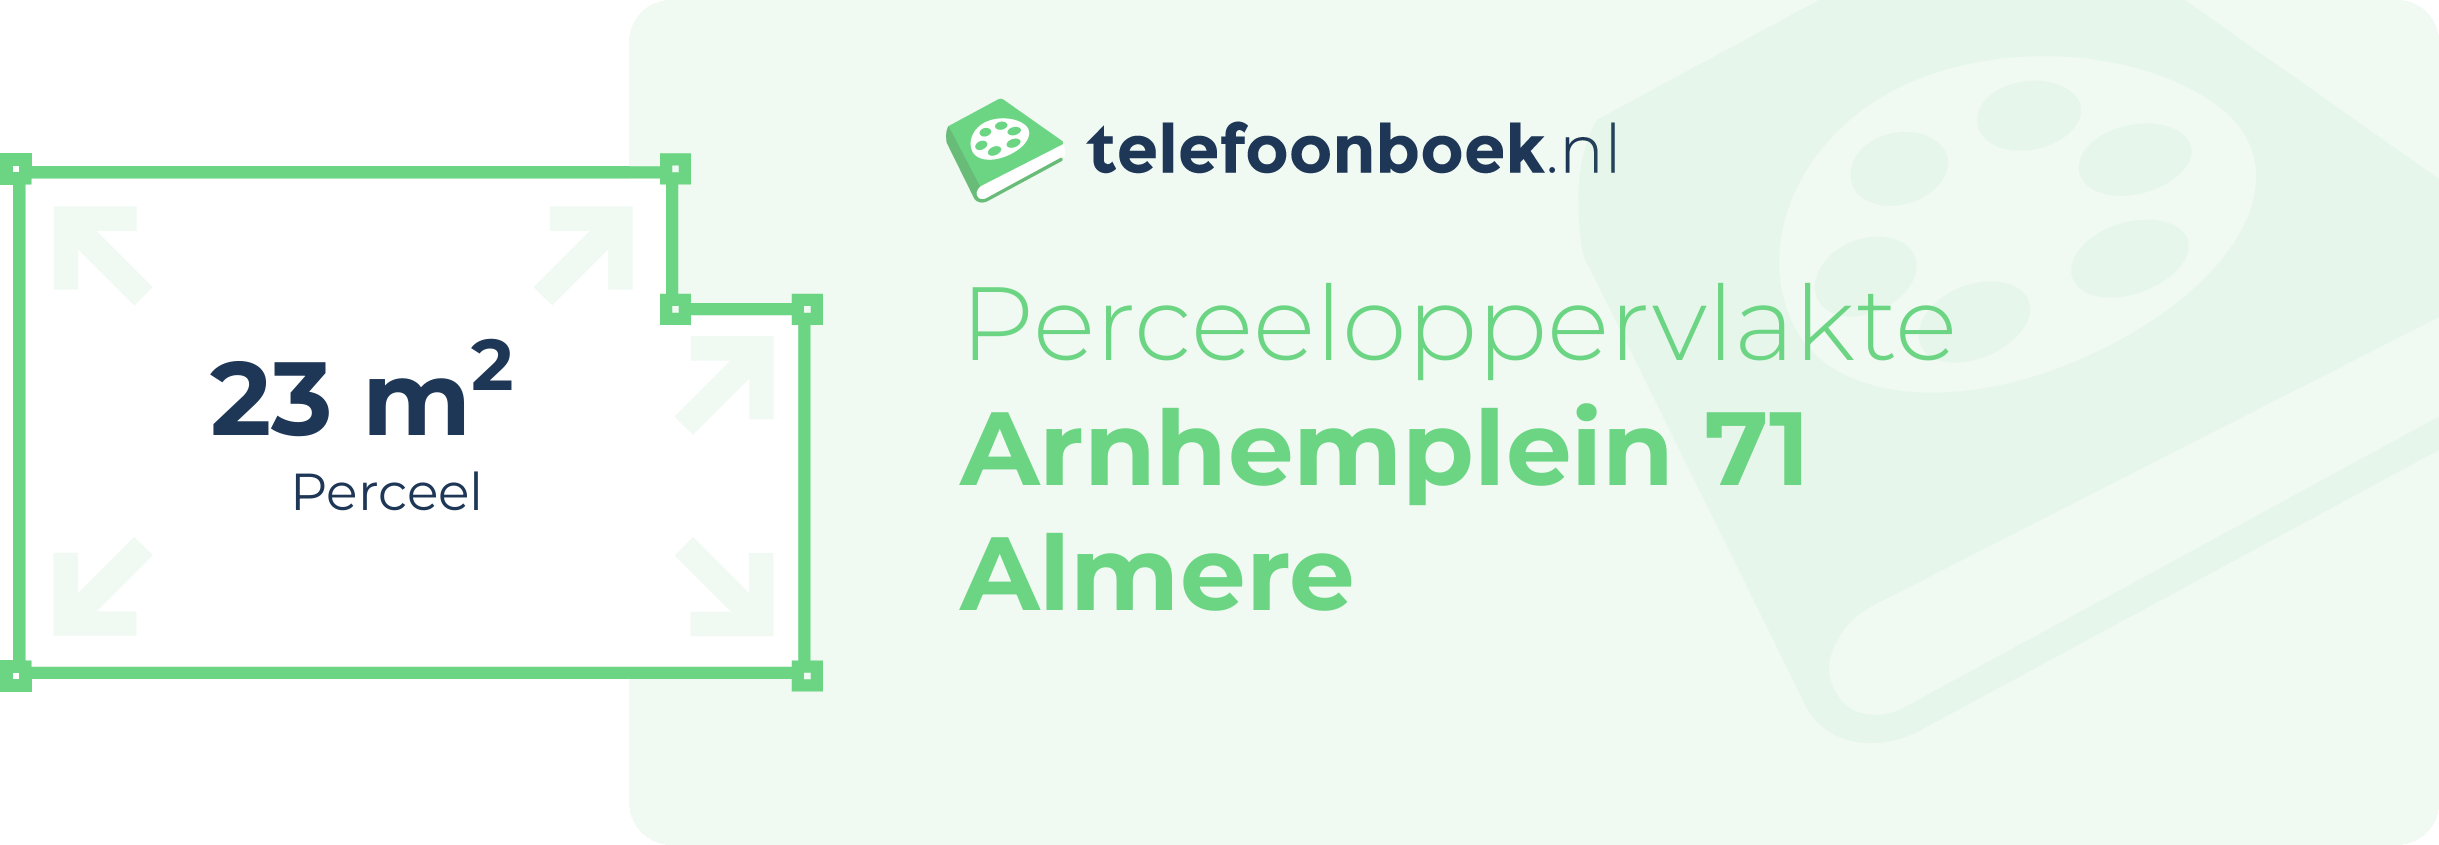 Perceeloppervlakte Arnhemplein 71 Almere